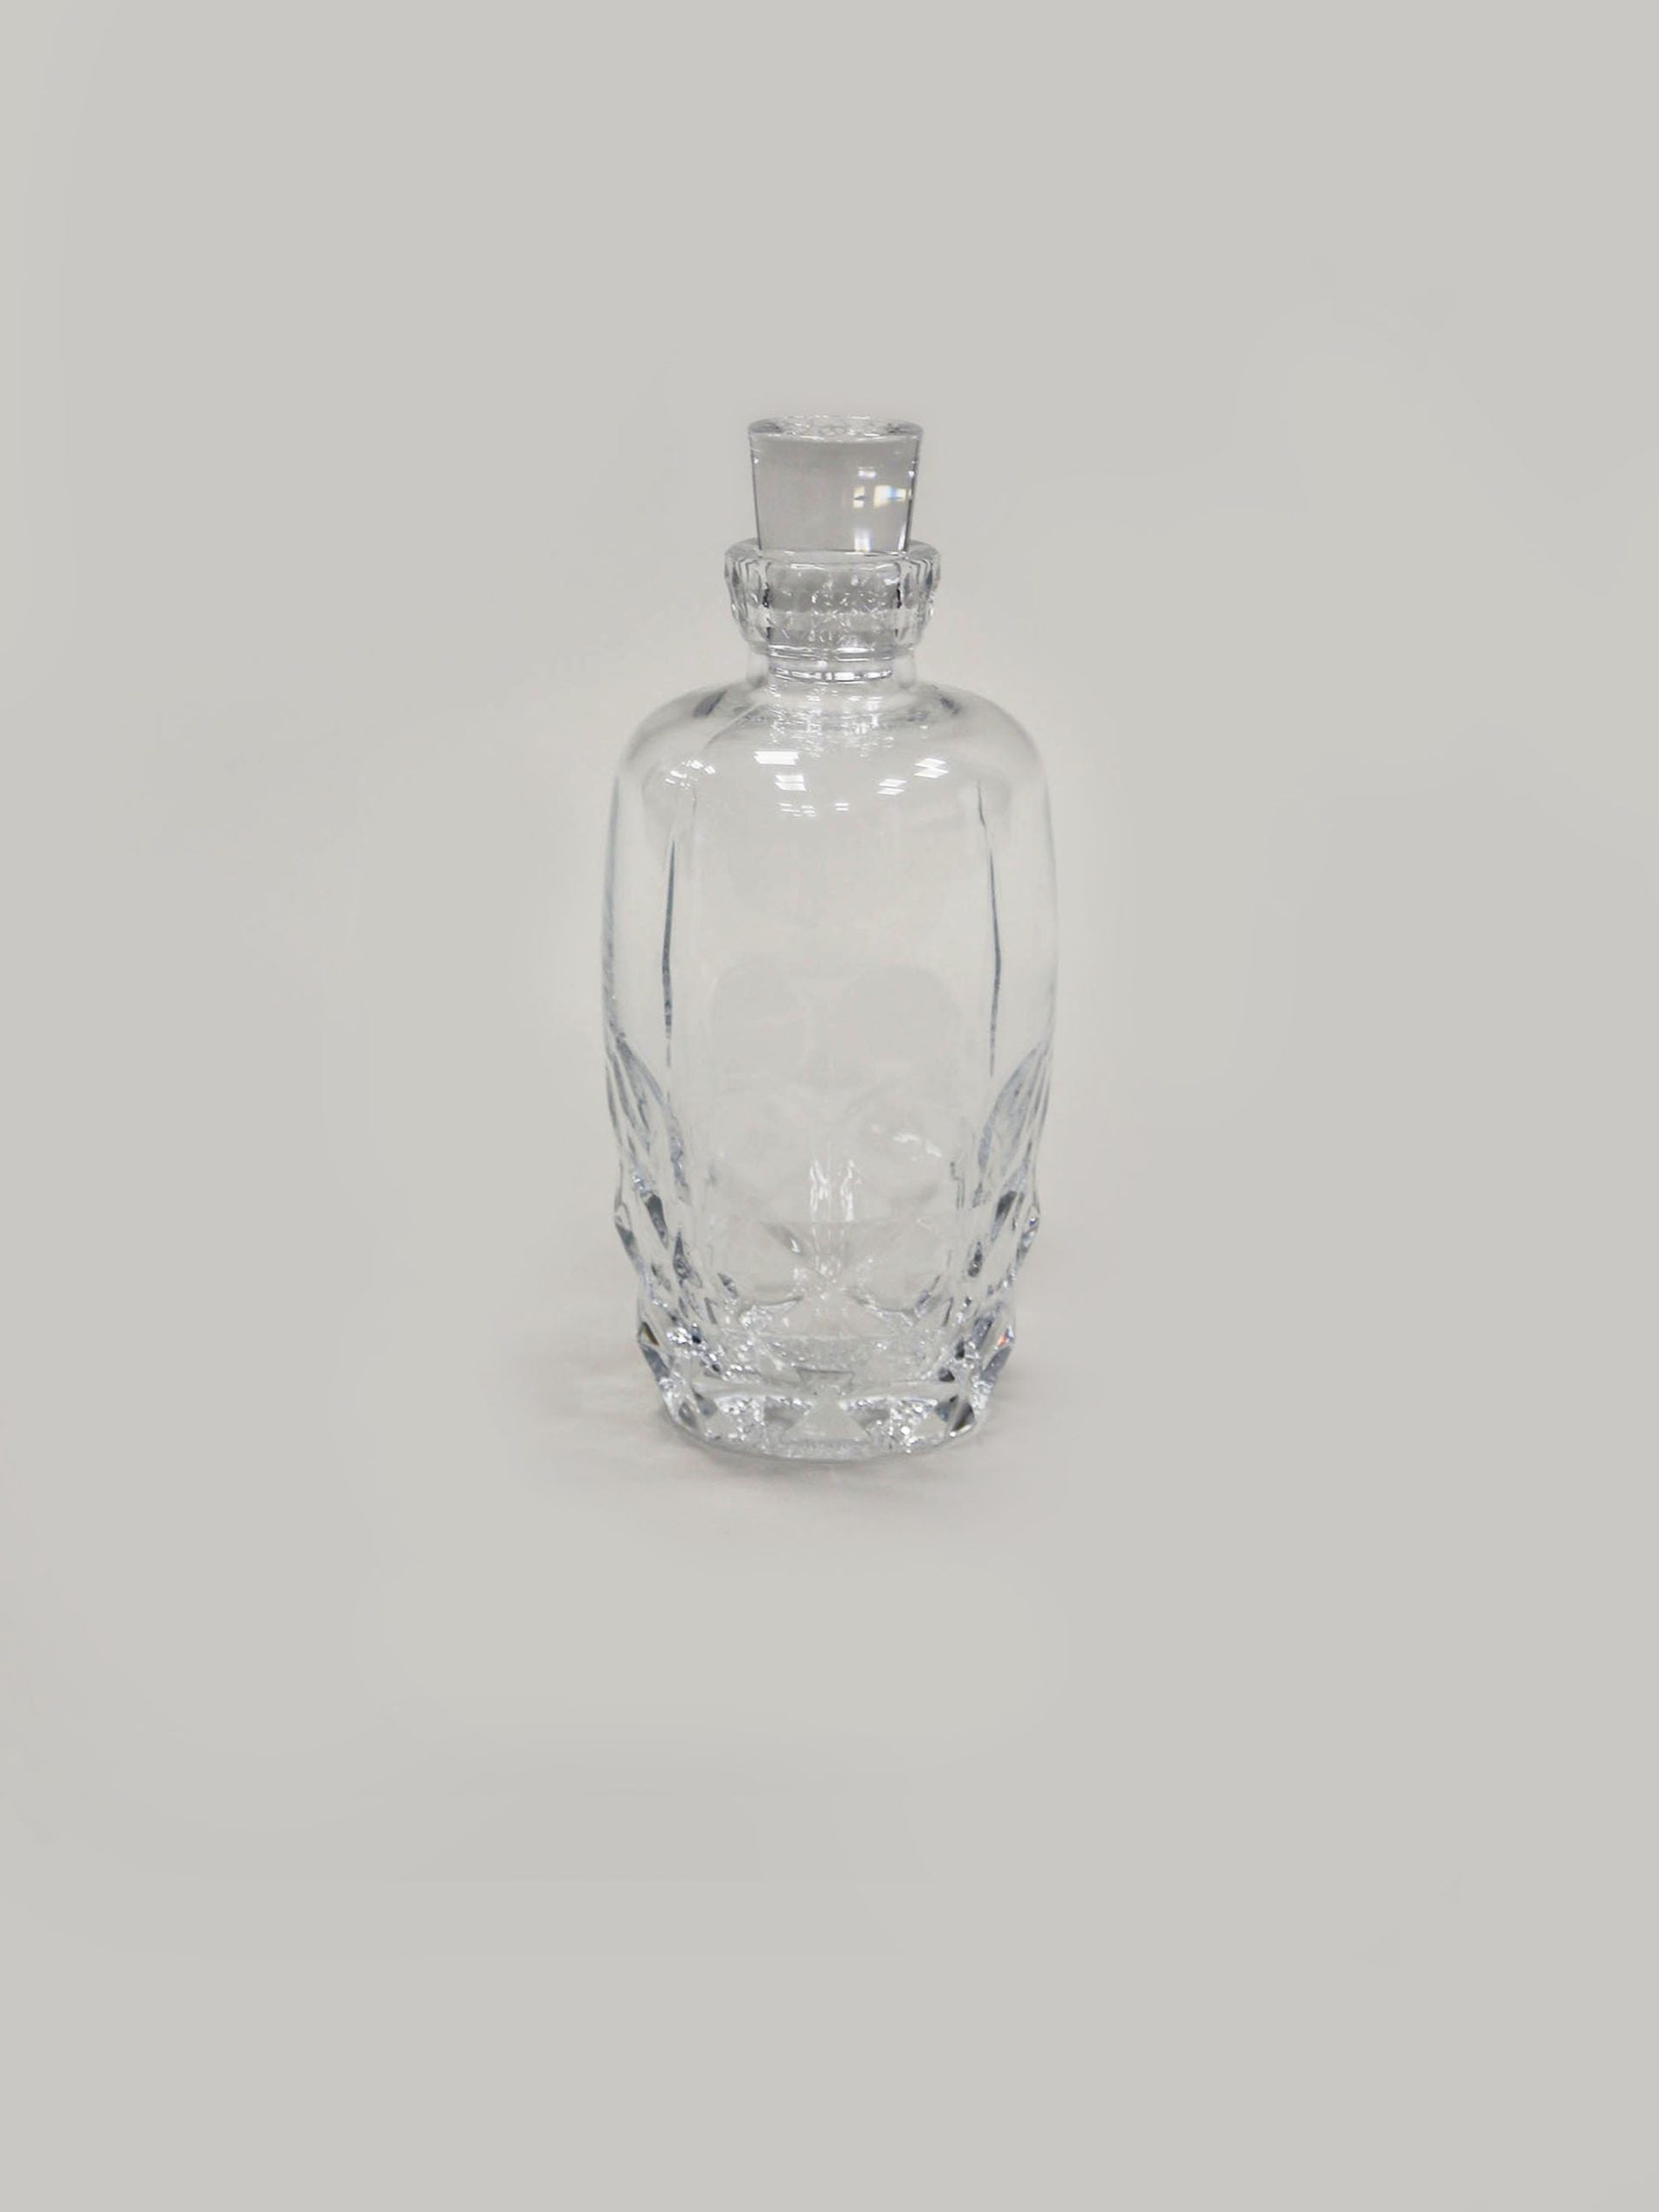   בקבוק קריסטל לוויסקי על רקע אפור בהיר בוהק